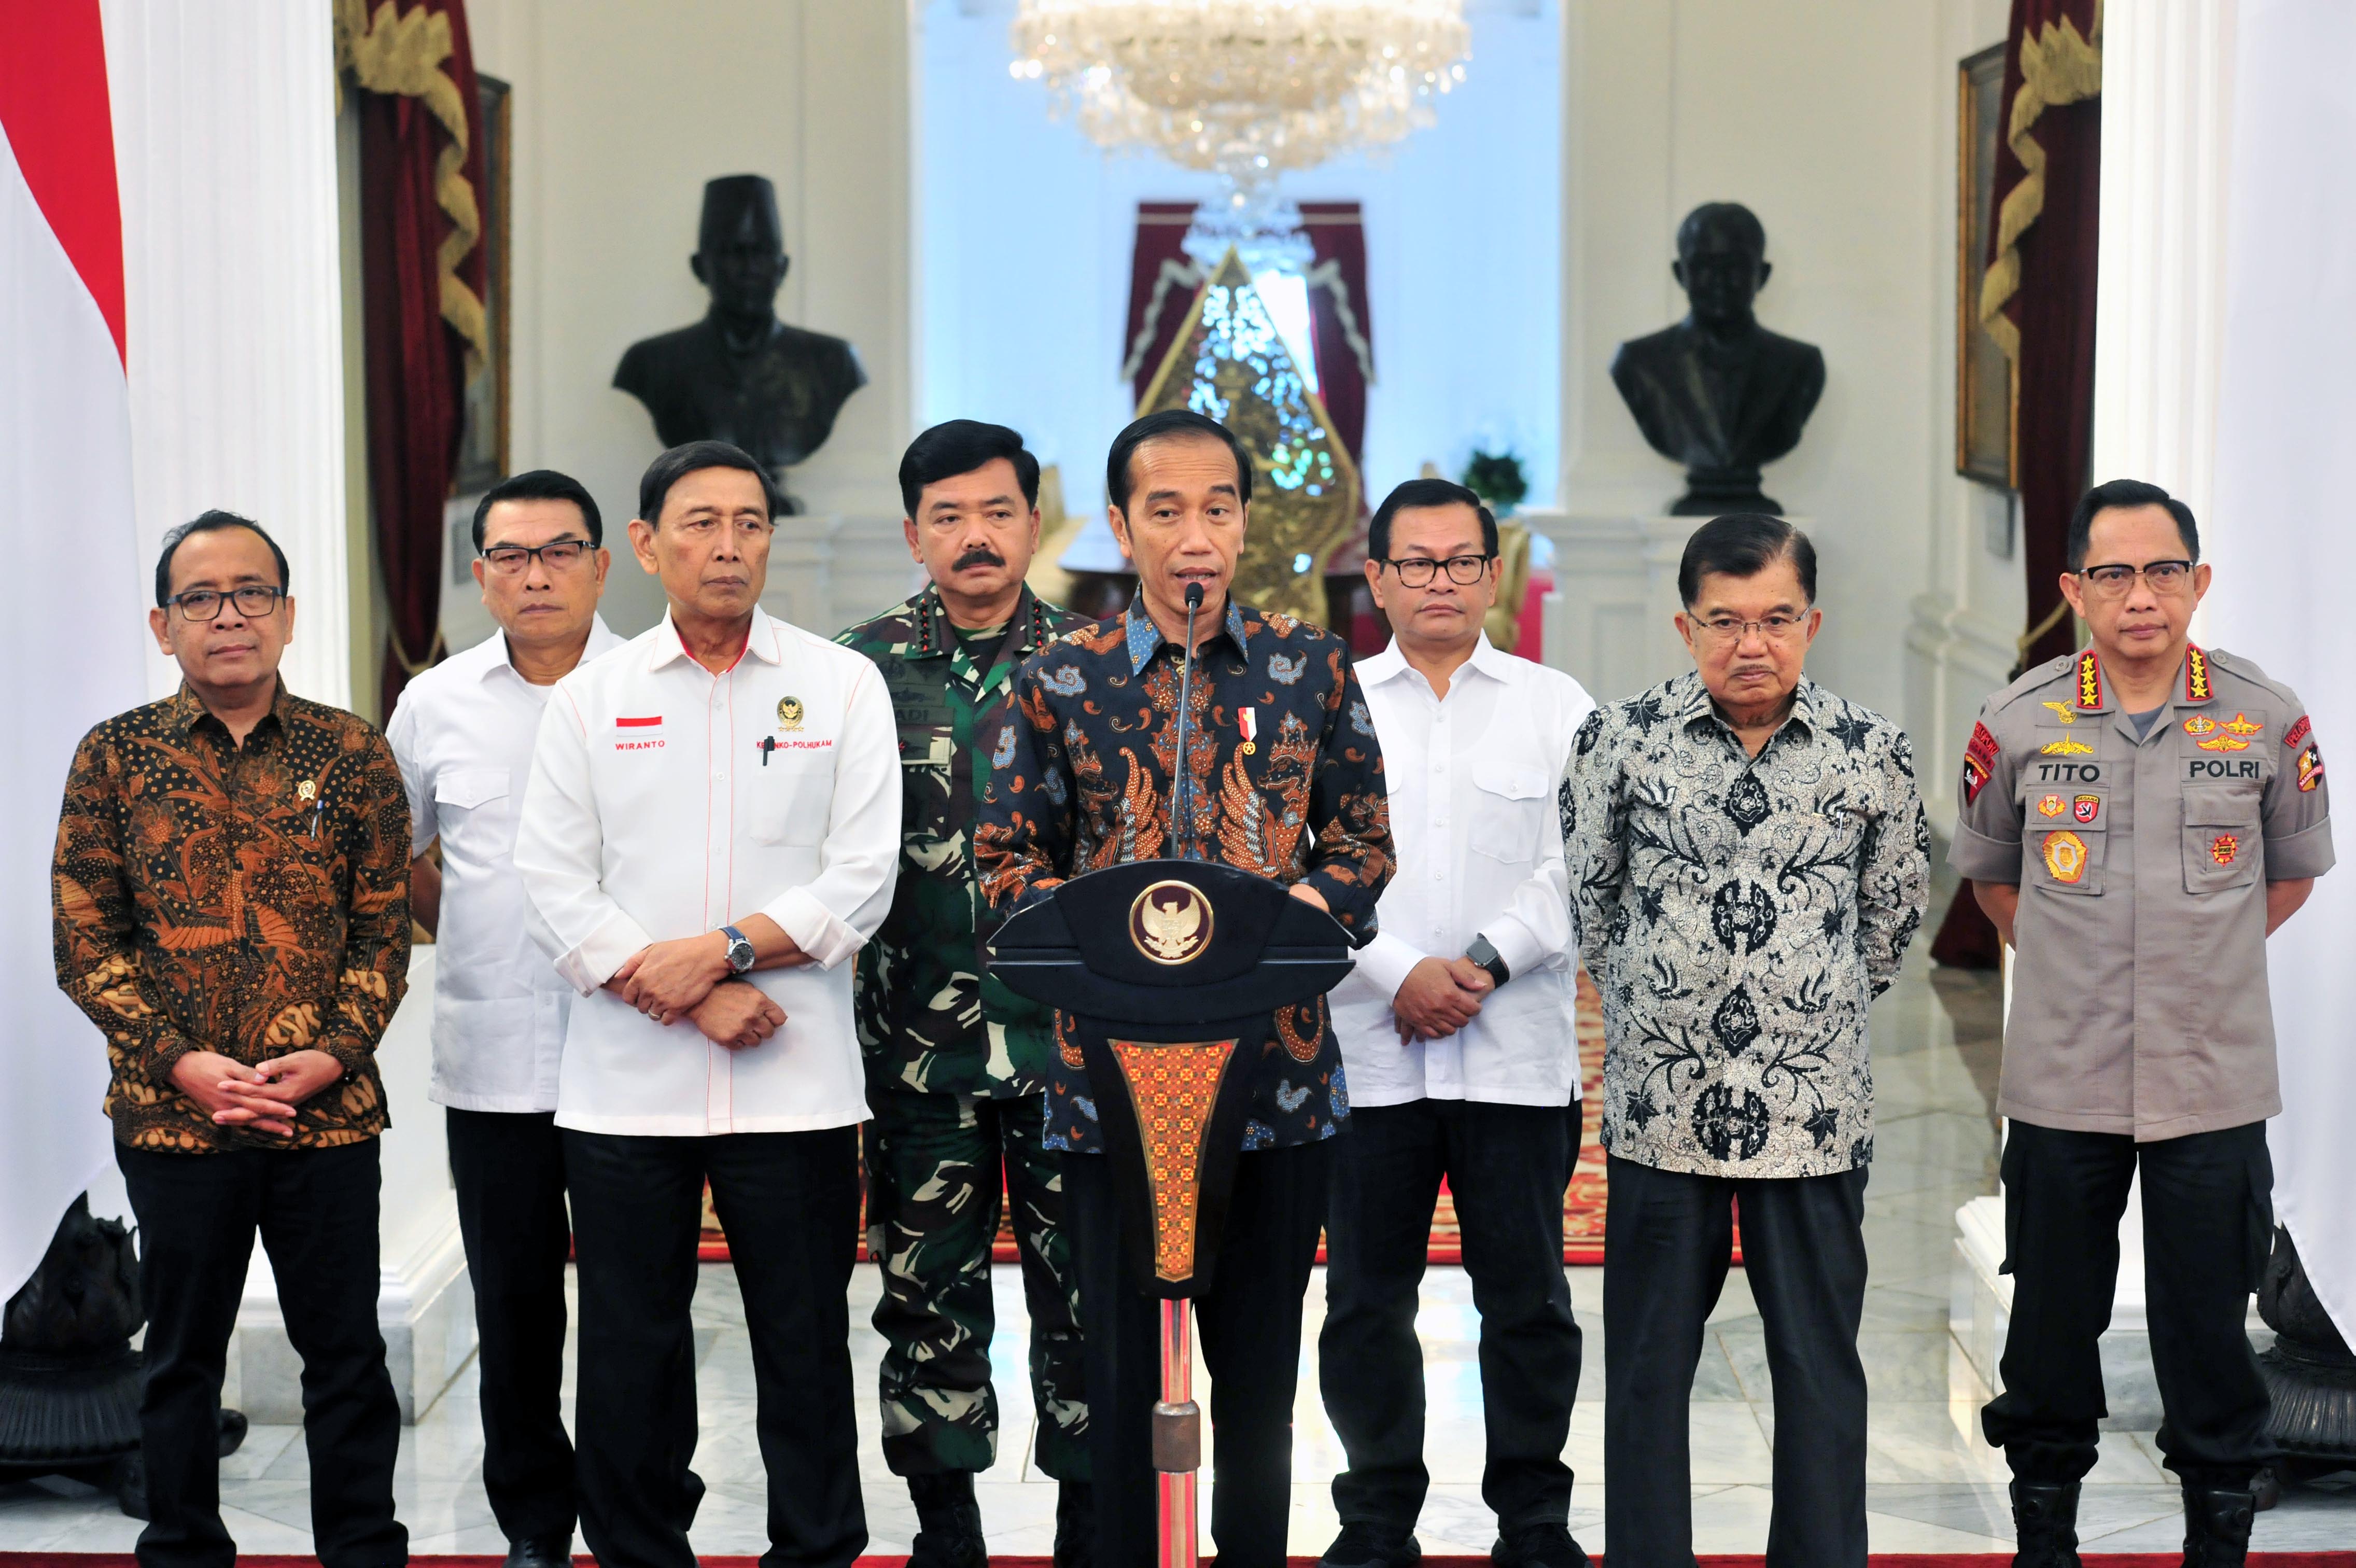 Situasi Terkendali, Presiden Jokowi Tegaskan Tidak Akan Beri Ruang Untuk Perusuh